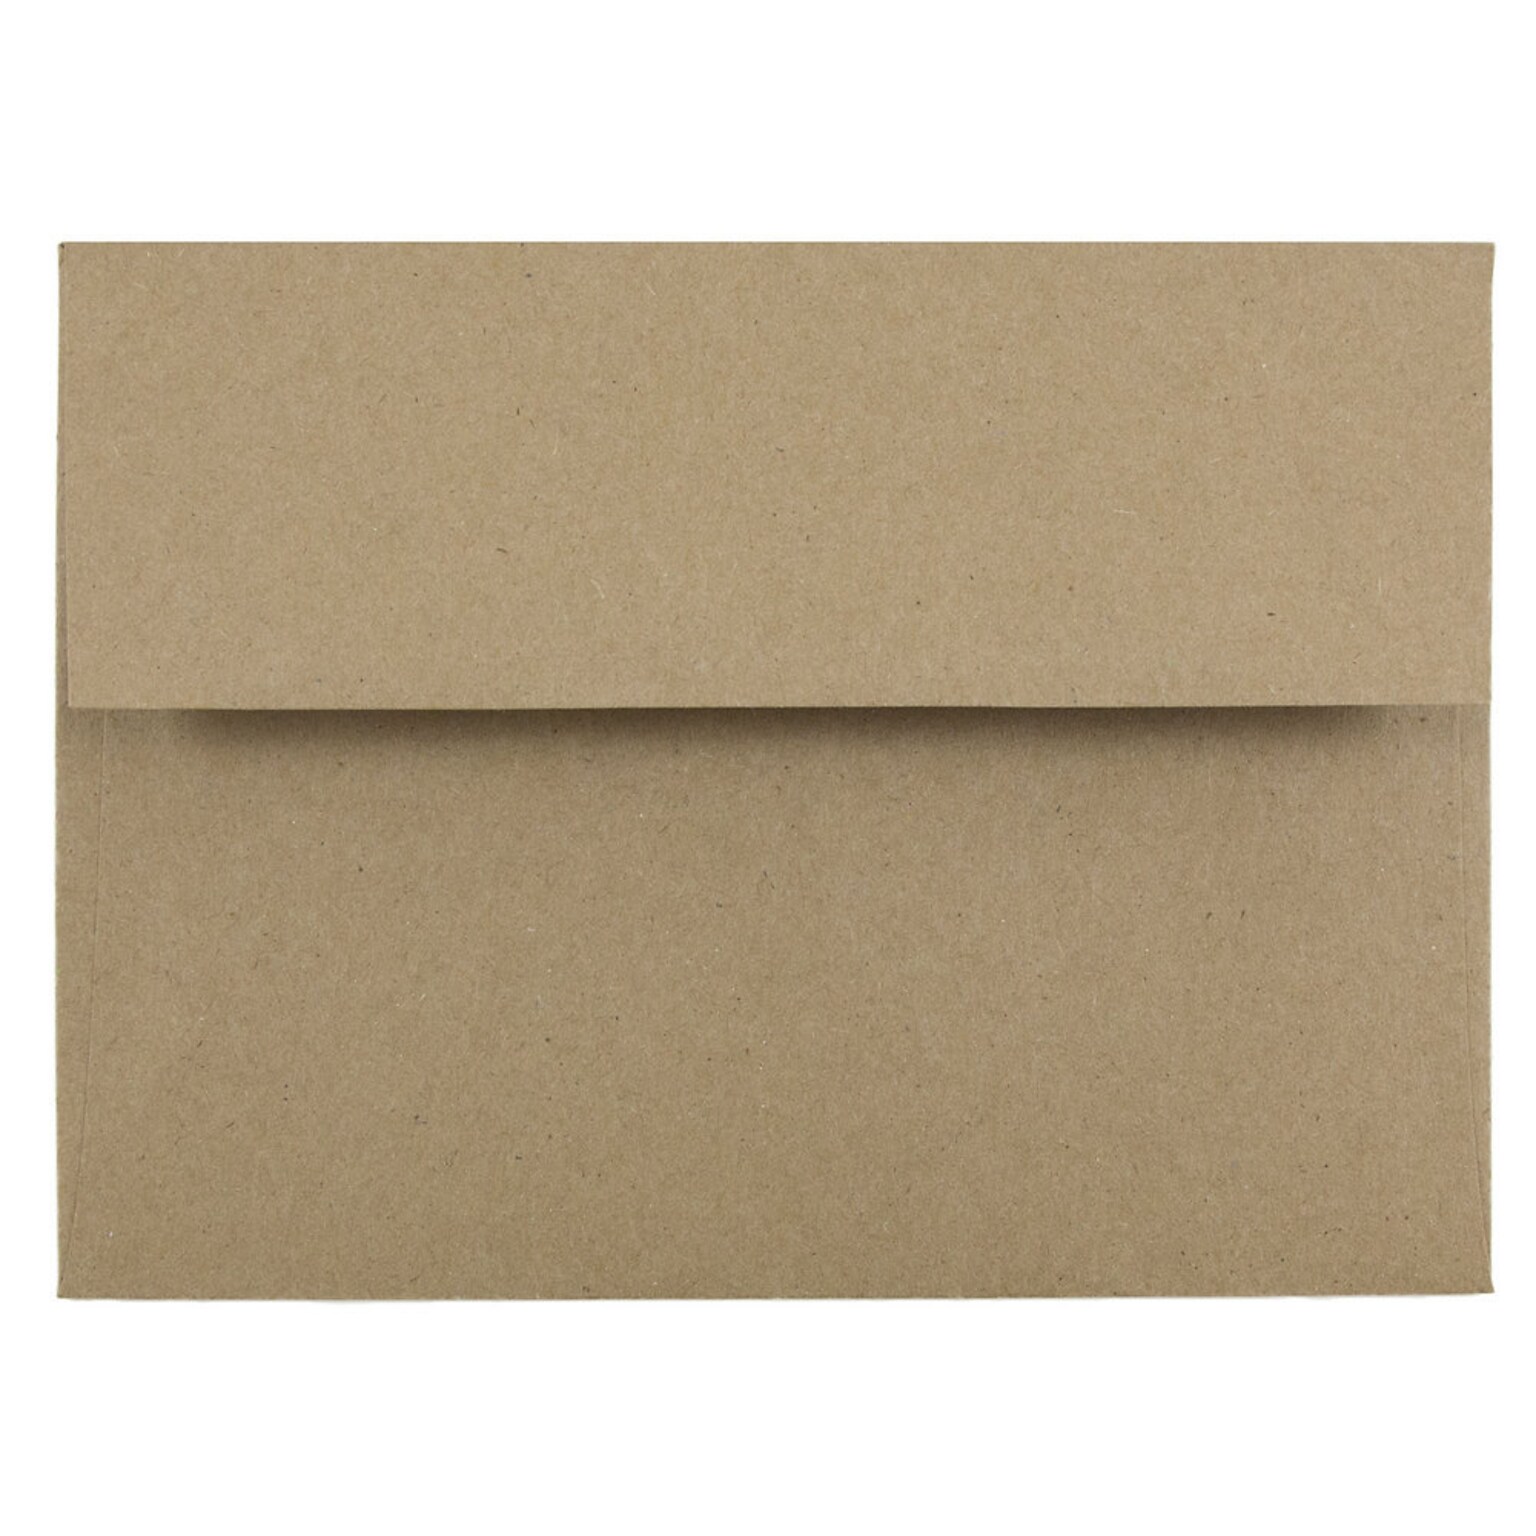 JAM Paper A6 Invitation Envelopes, 4.75 x 6.5, Brown Kraft Paper Bag, 25/Pack (LEKR650)